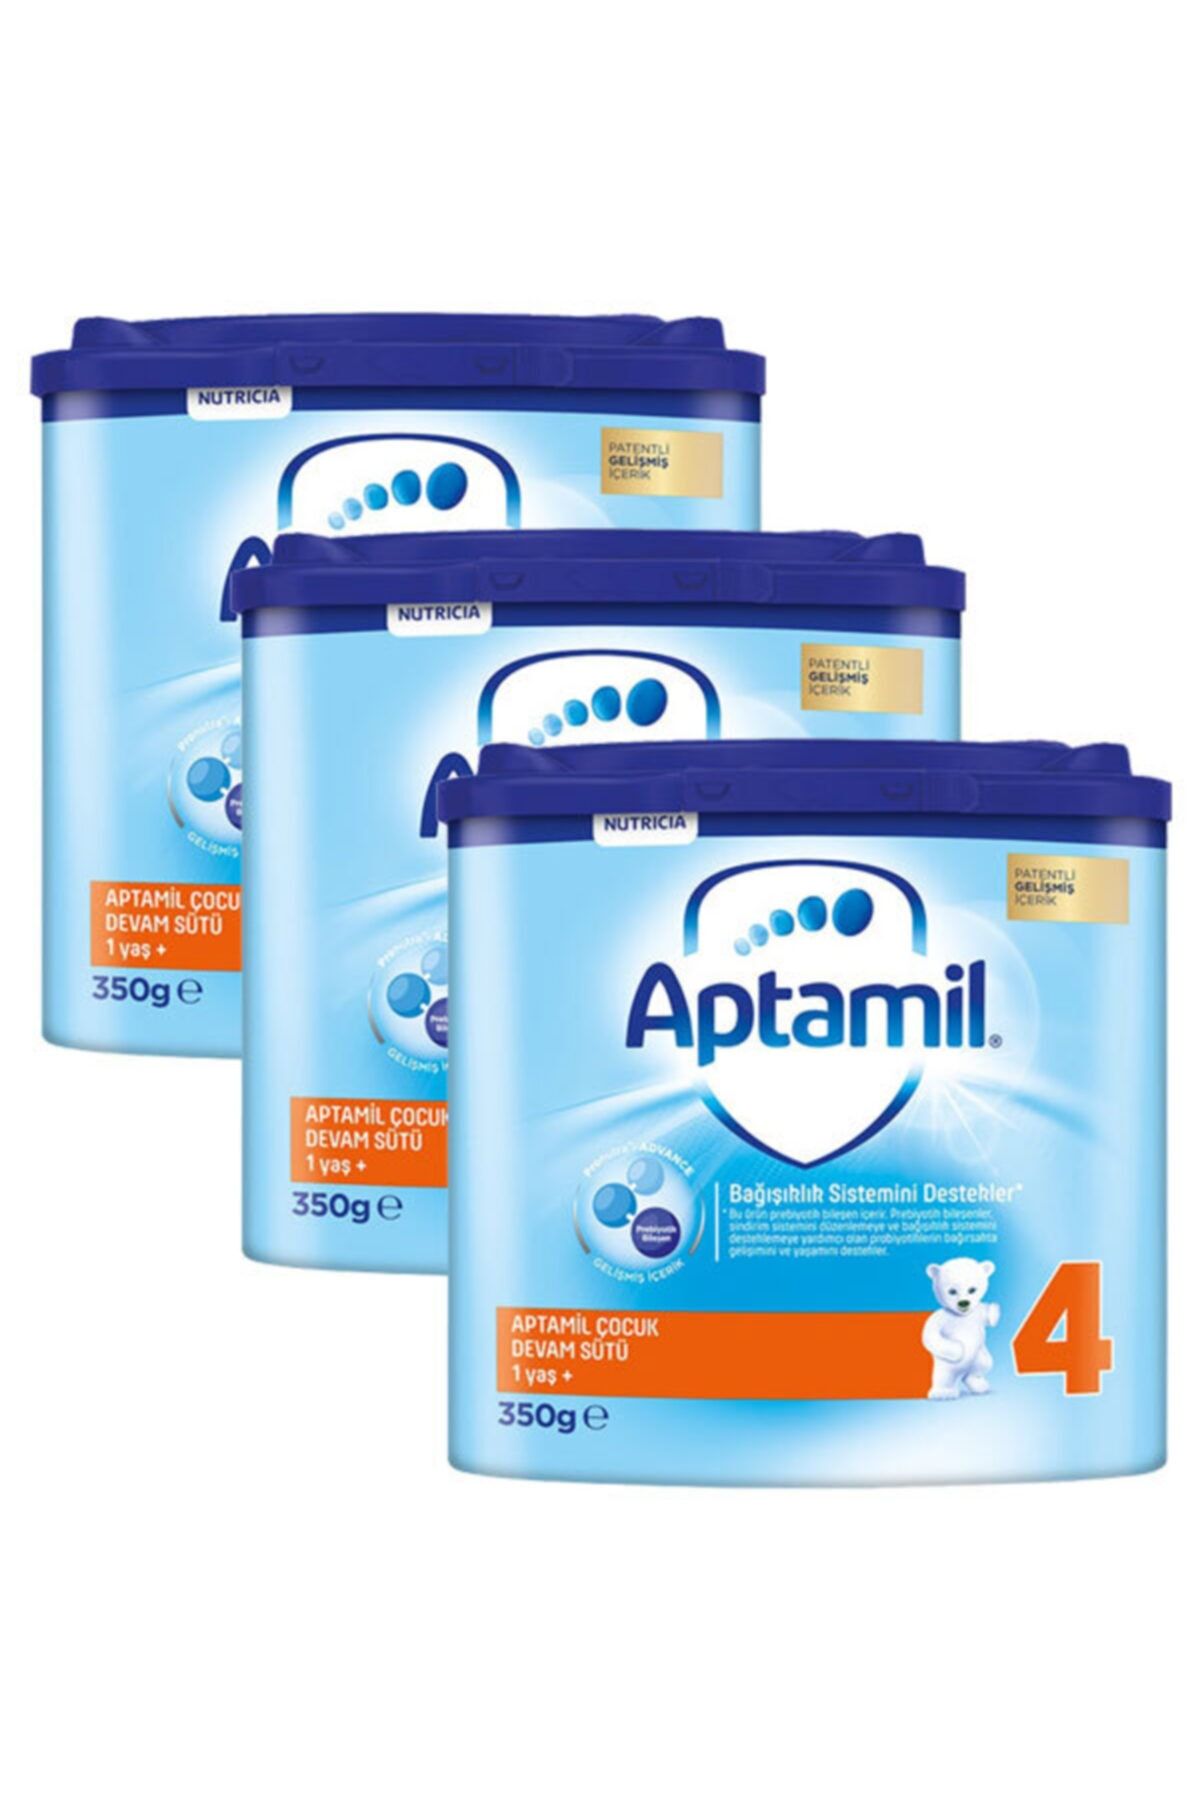 Aptamil 4 Akıllı Kutu Çocuk Devam Sütü 350 gr X 3 Adet